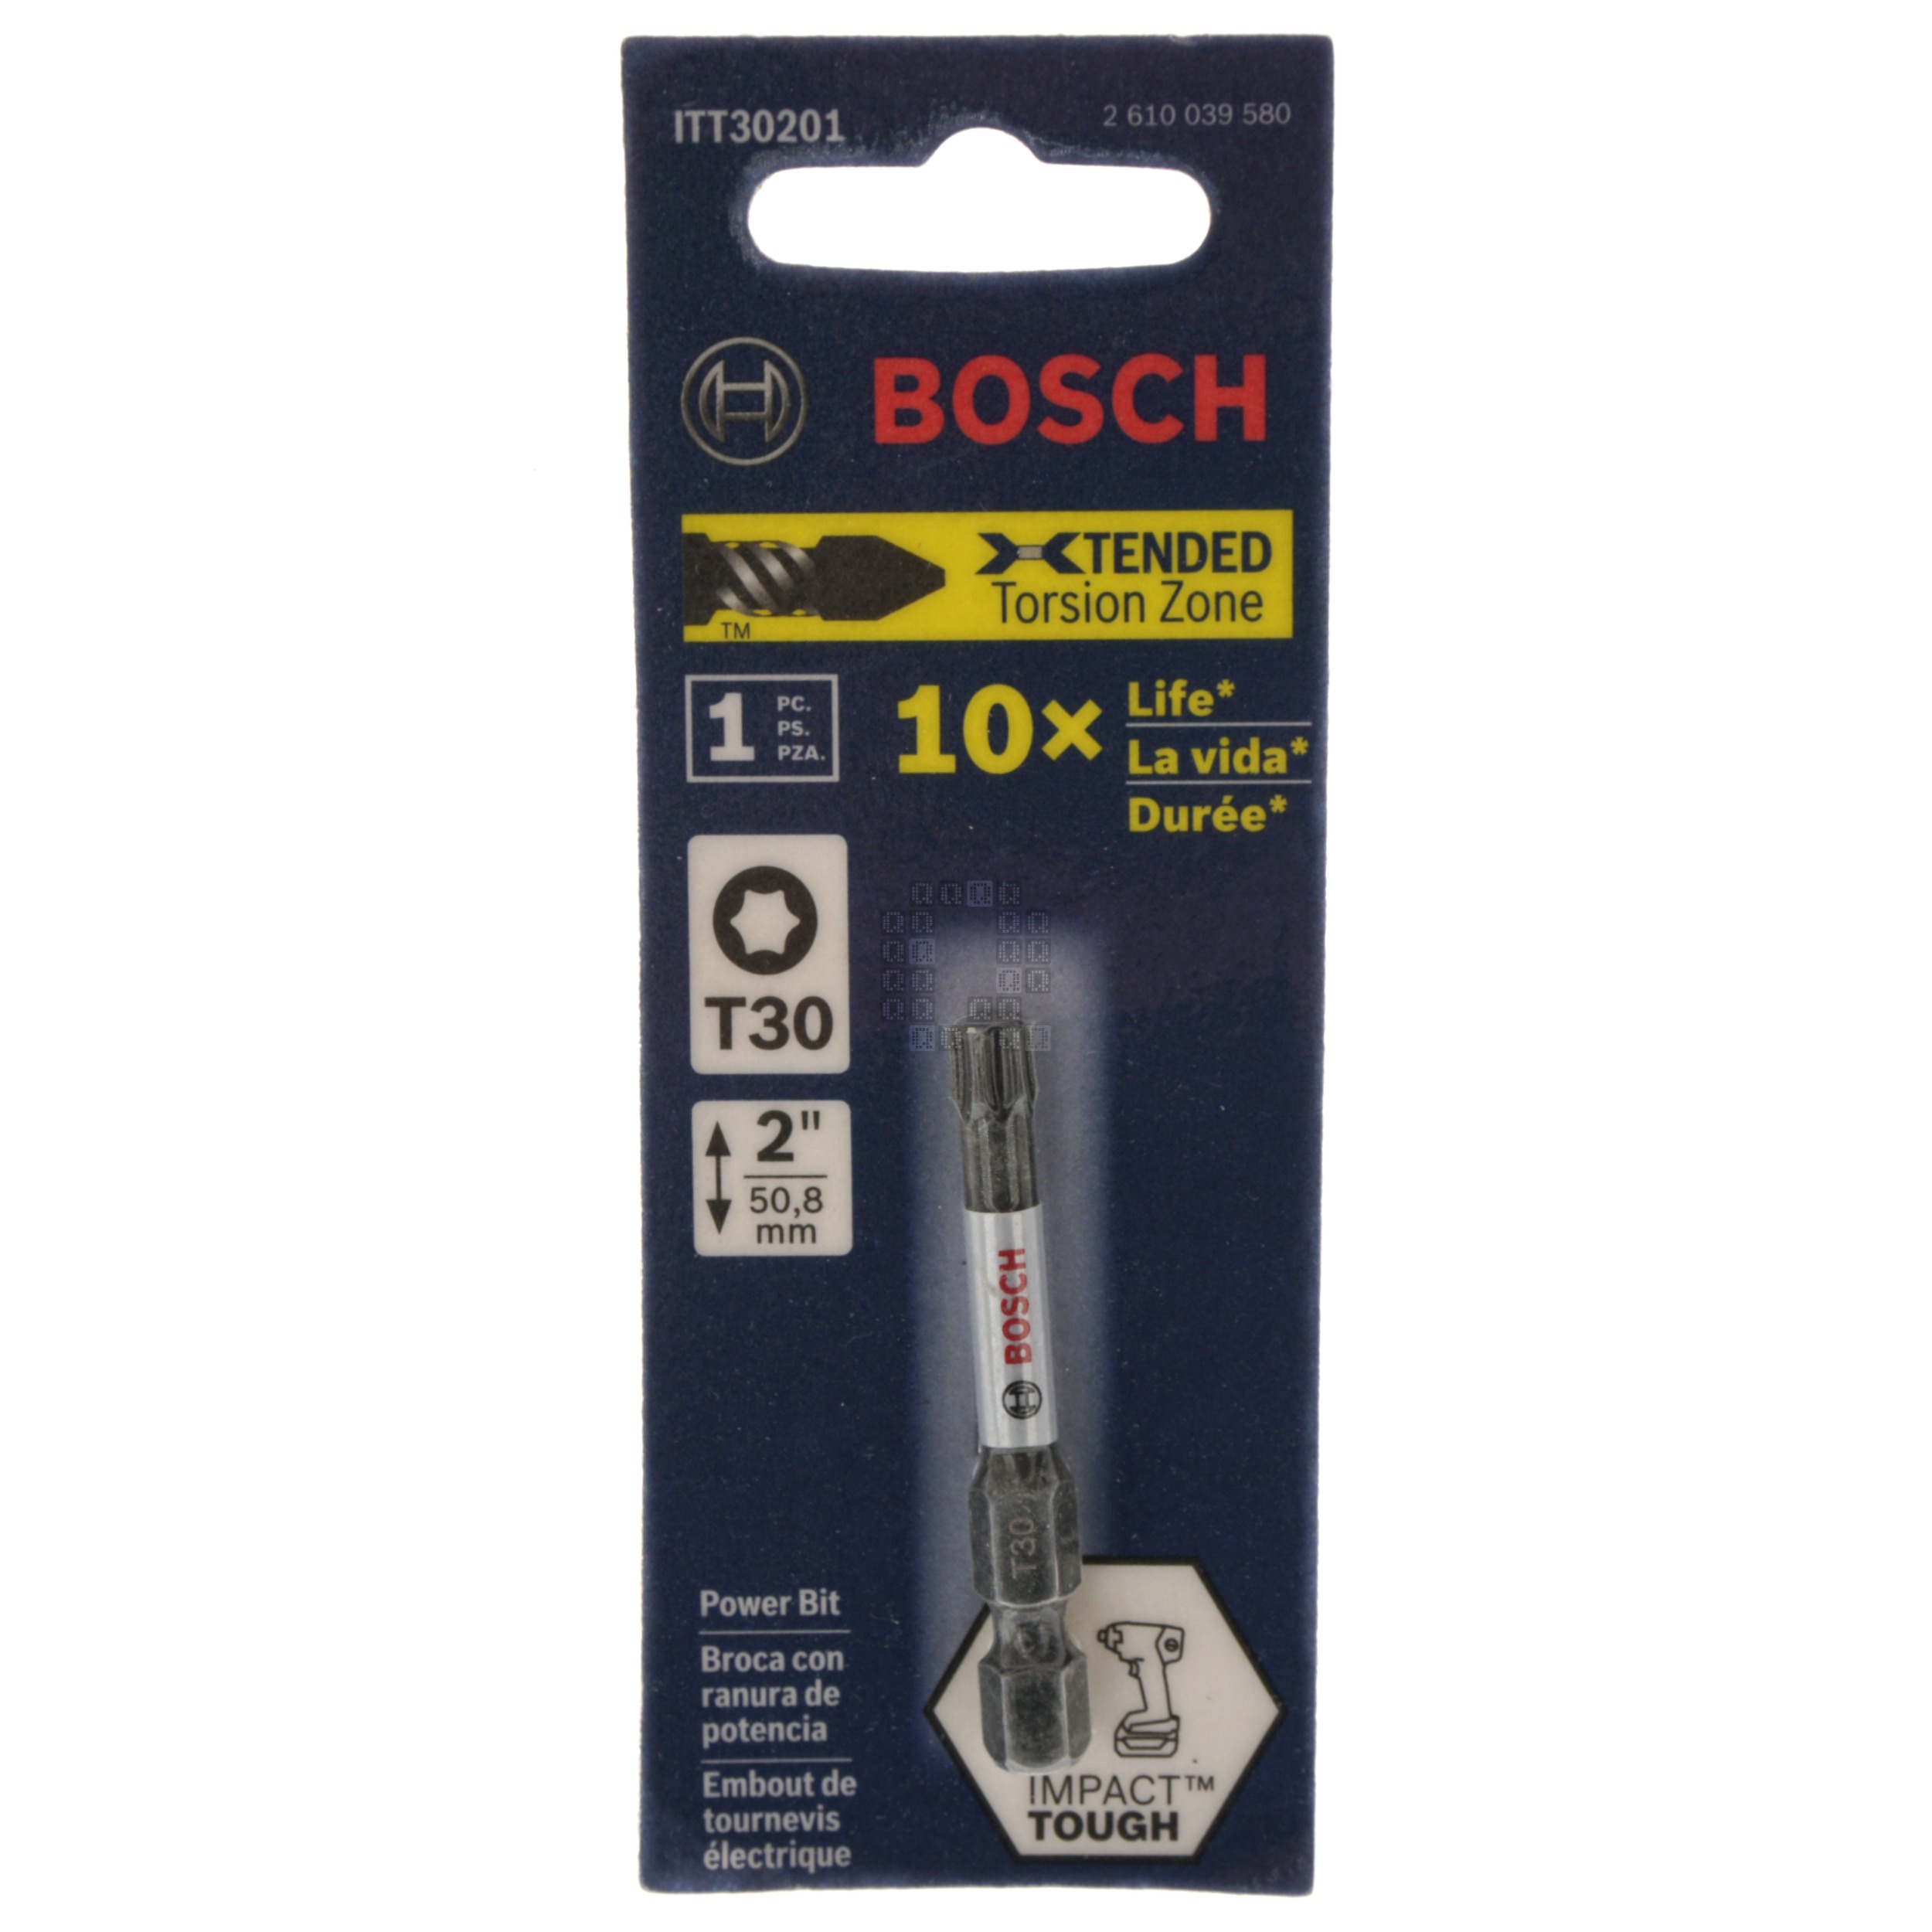 Bosch 2610039580 ITT30201 Impact Tough, T30 TORX Power Bit, 2" Length